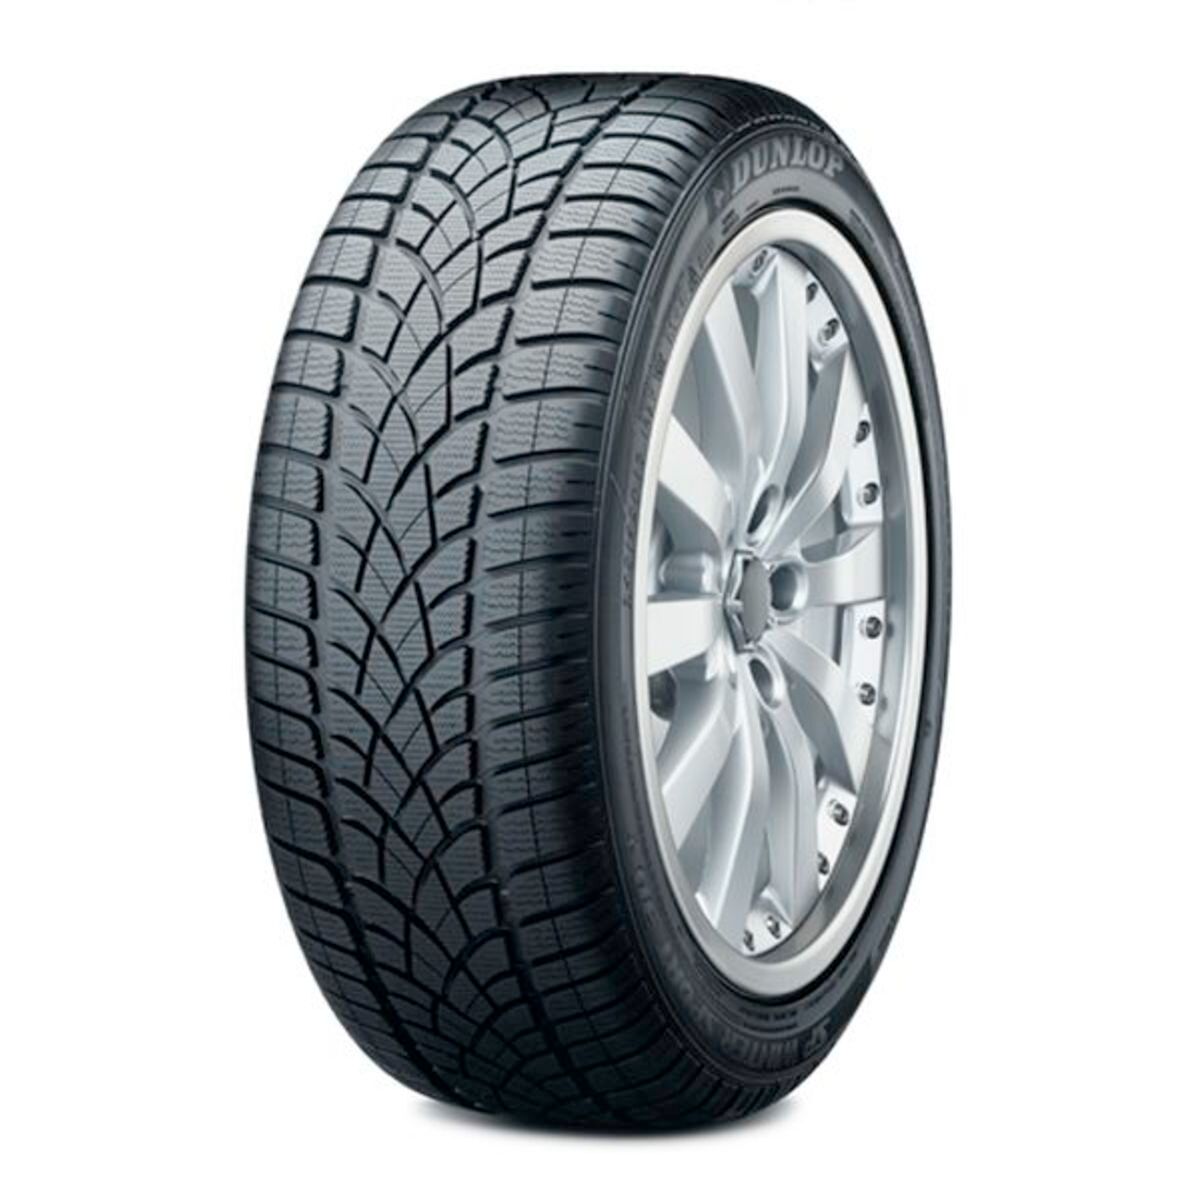 Neumáticos de invierno DUNLOP SP Winter Sport 3D 195/50R16 XL 88H